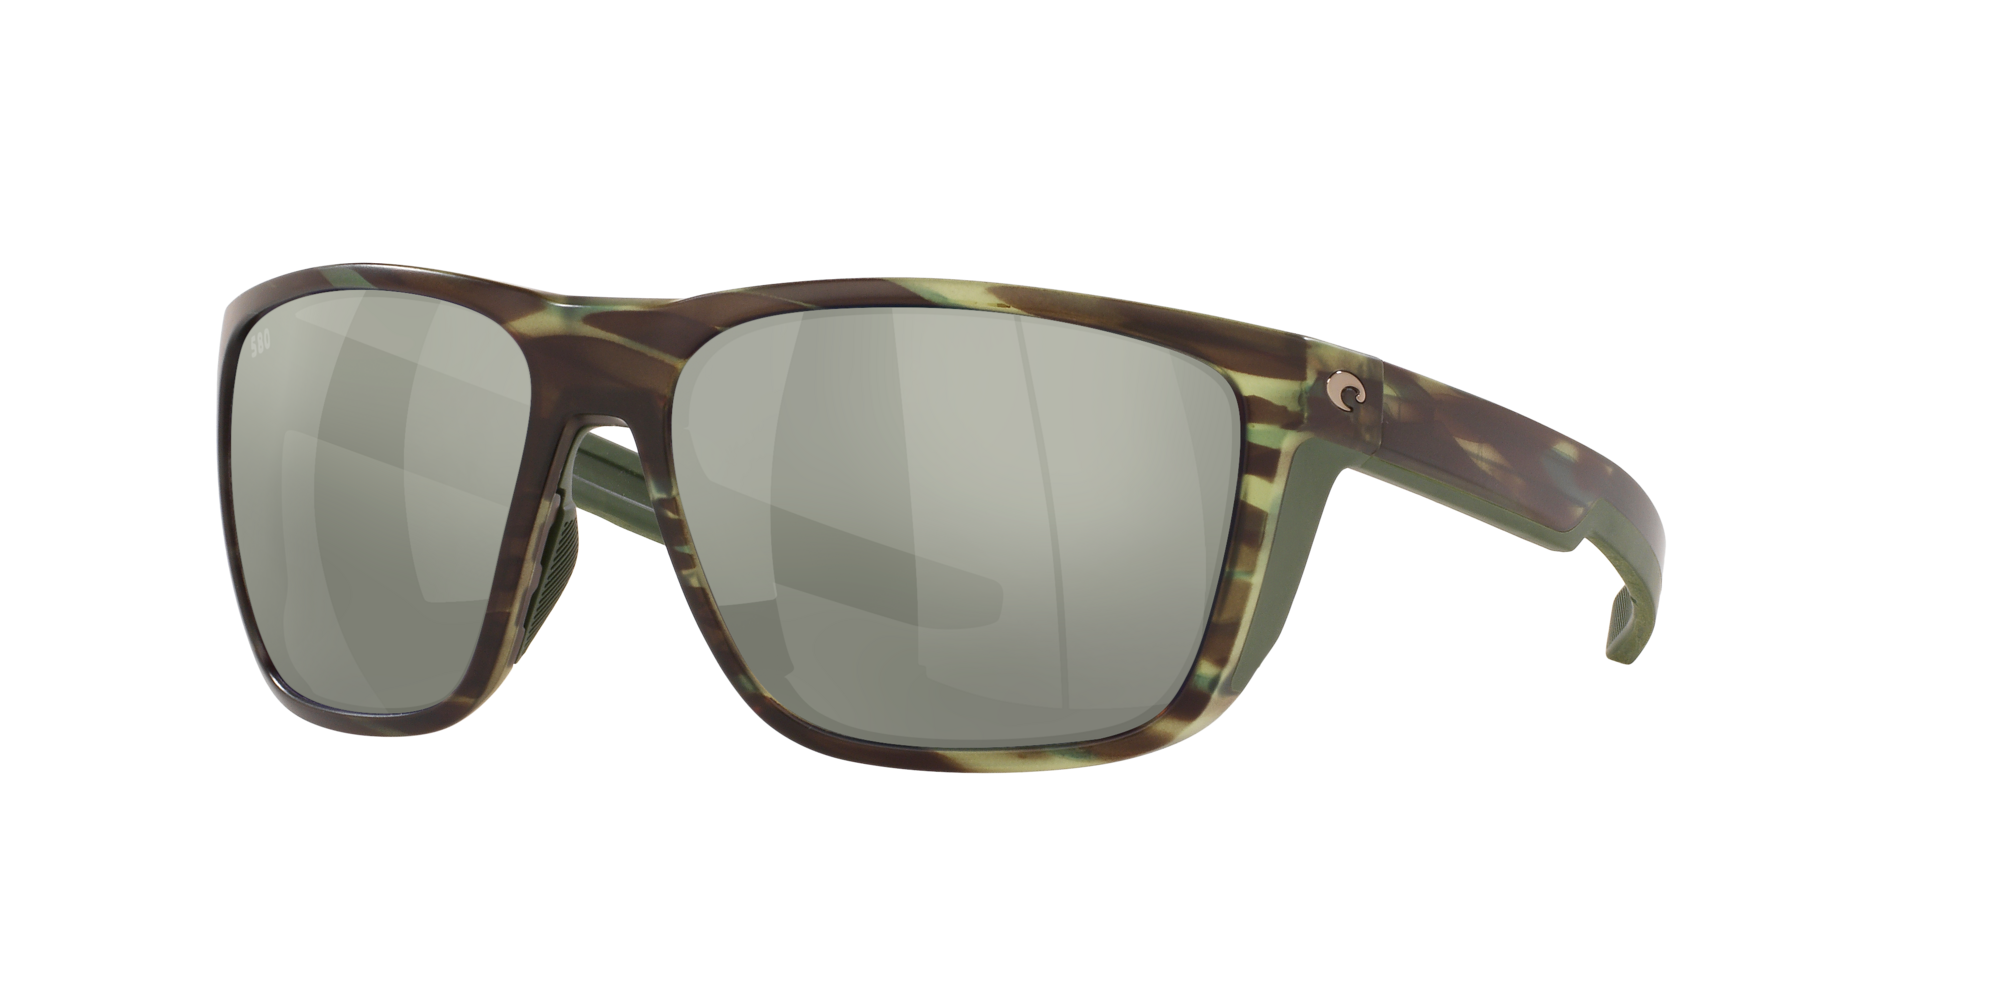 Ferg Polarized Sunglasses in Gray Silver Mirror | Costa Del Mar®